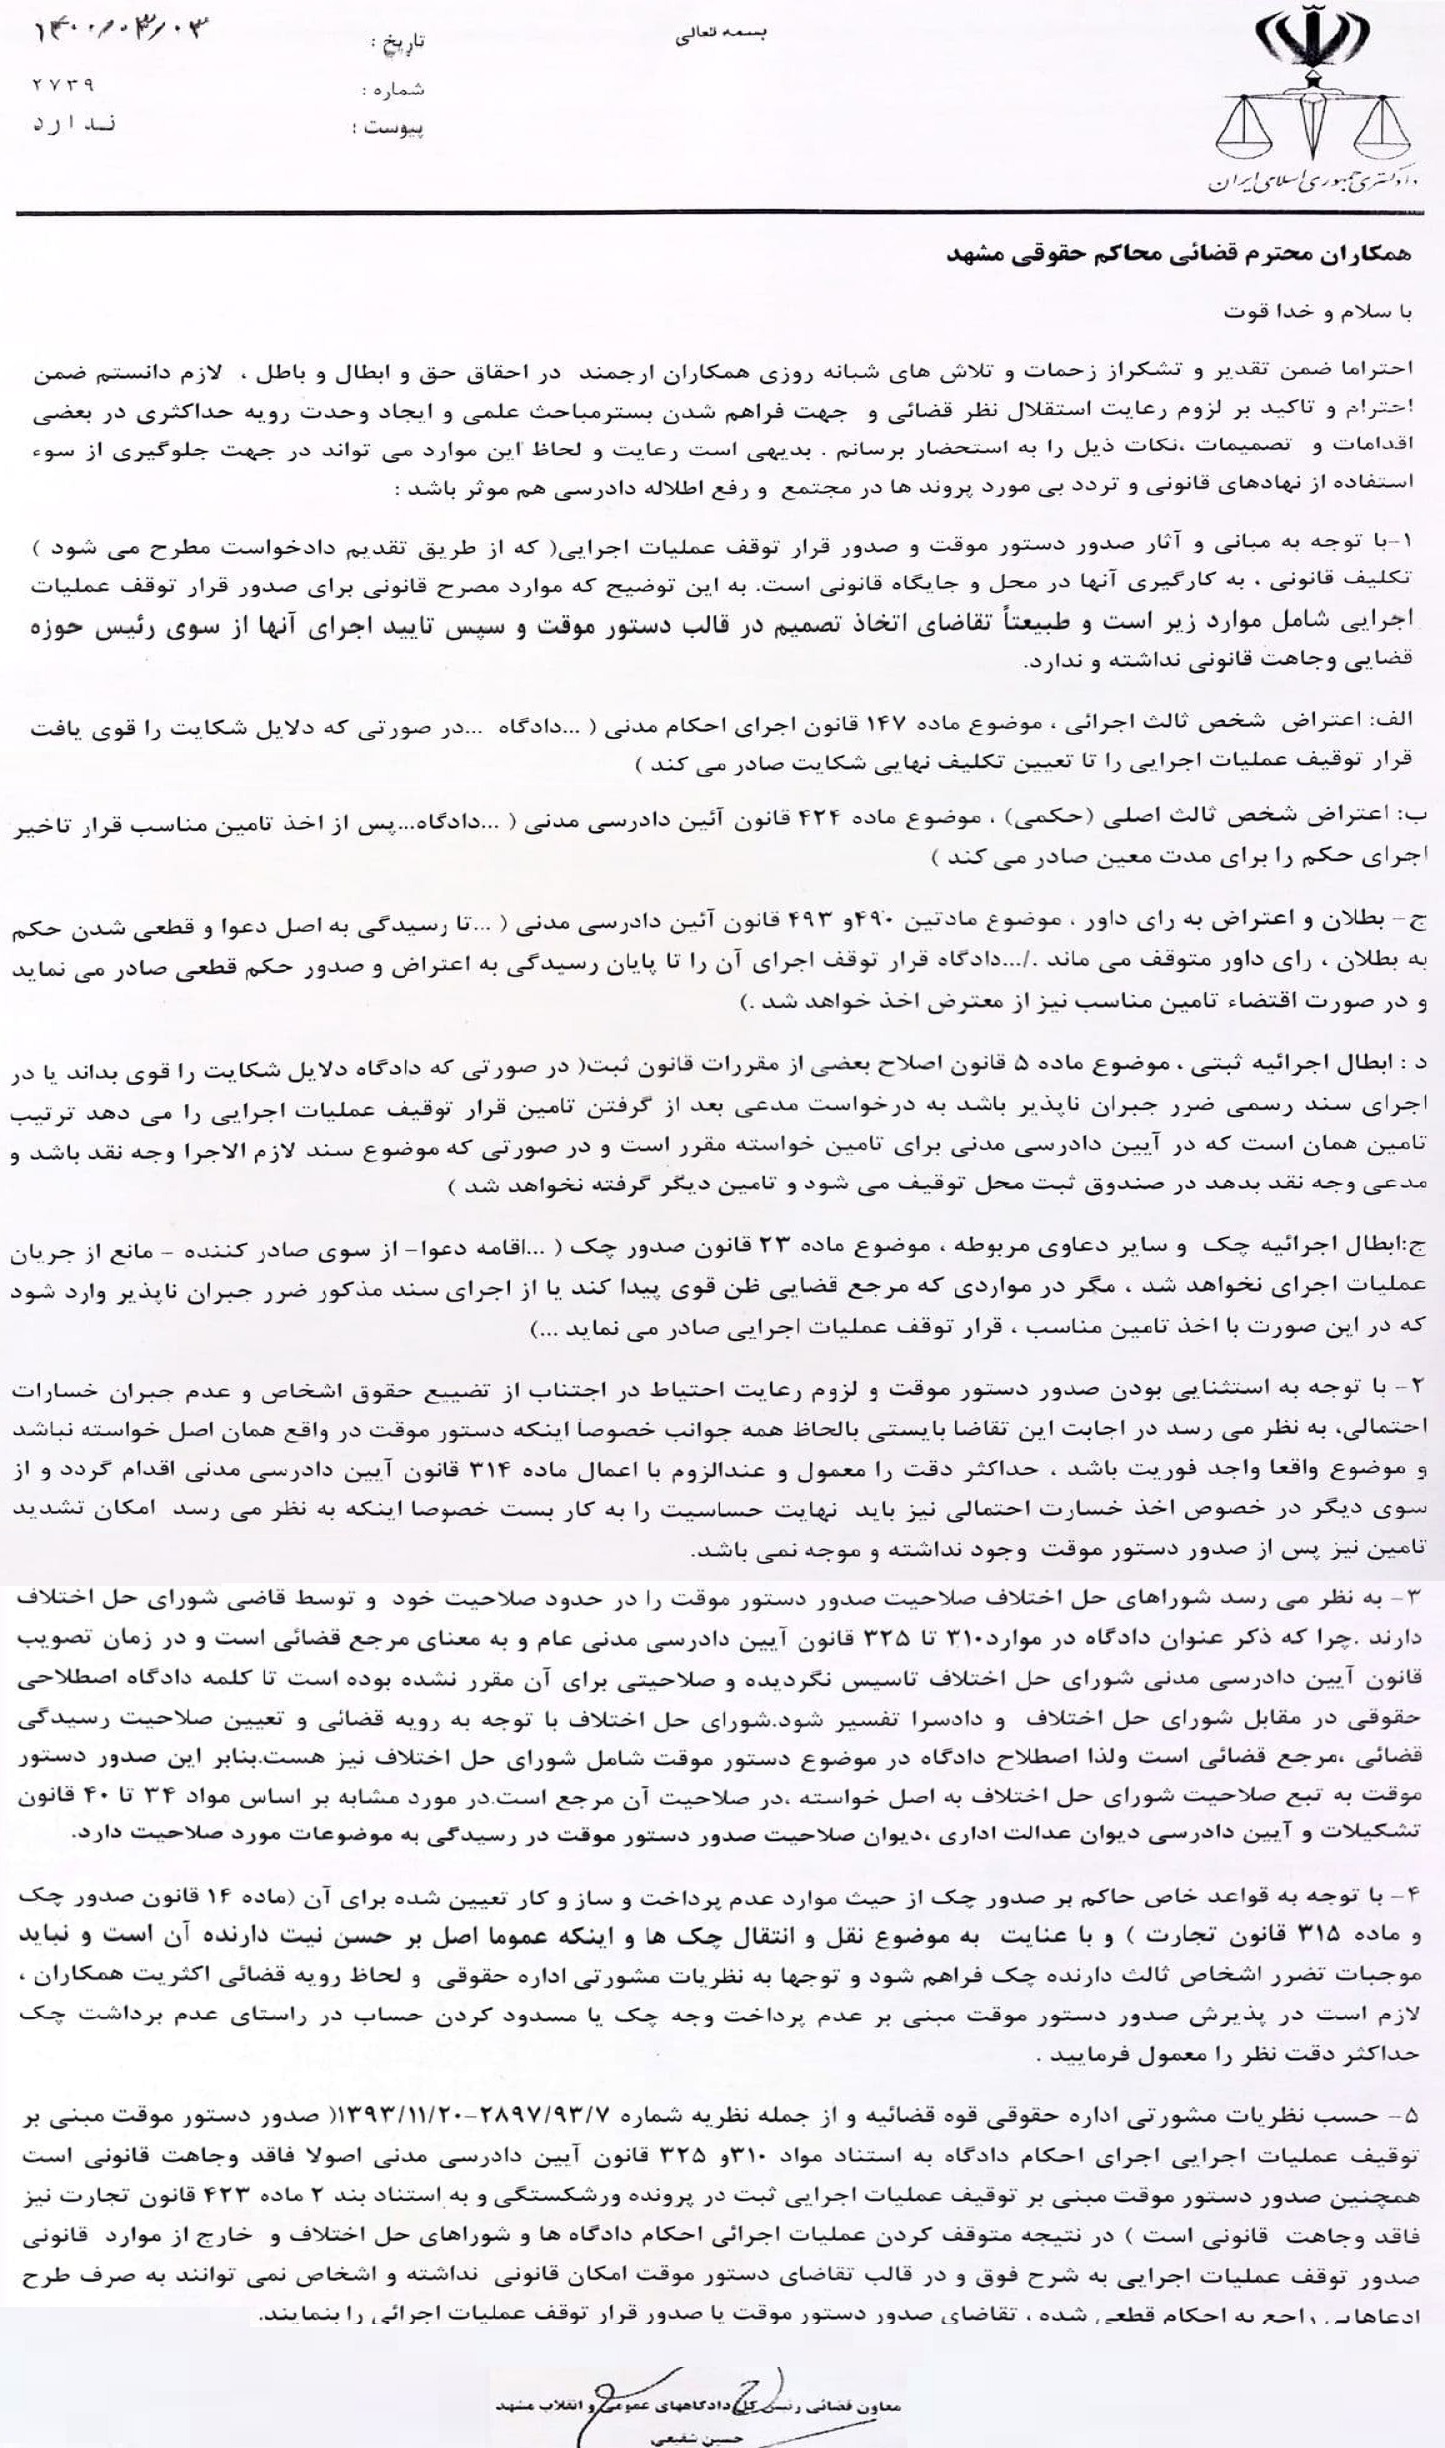  بخشنامه معاون قضایی رییس کل دادگاه های عمومی و انقلاب مشهد درباره ایجاد وحدت رویه درخصوص صدور «دستور موقت»